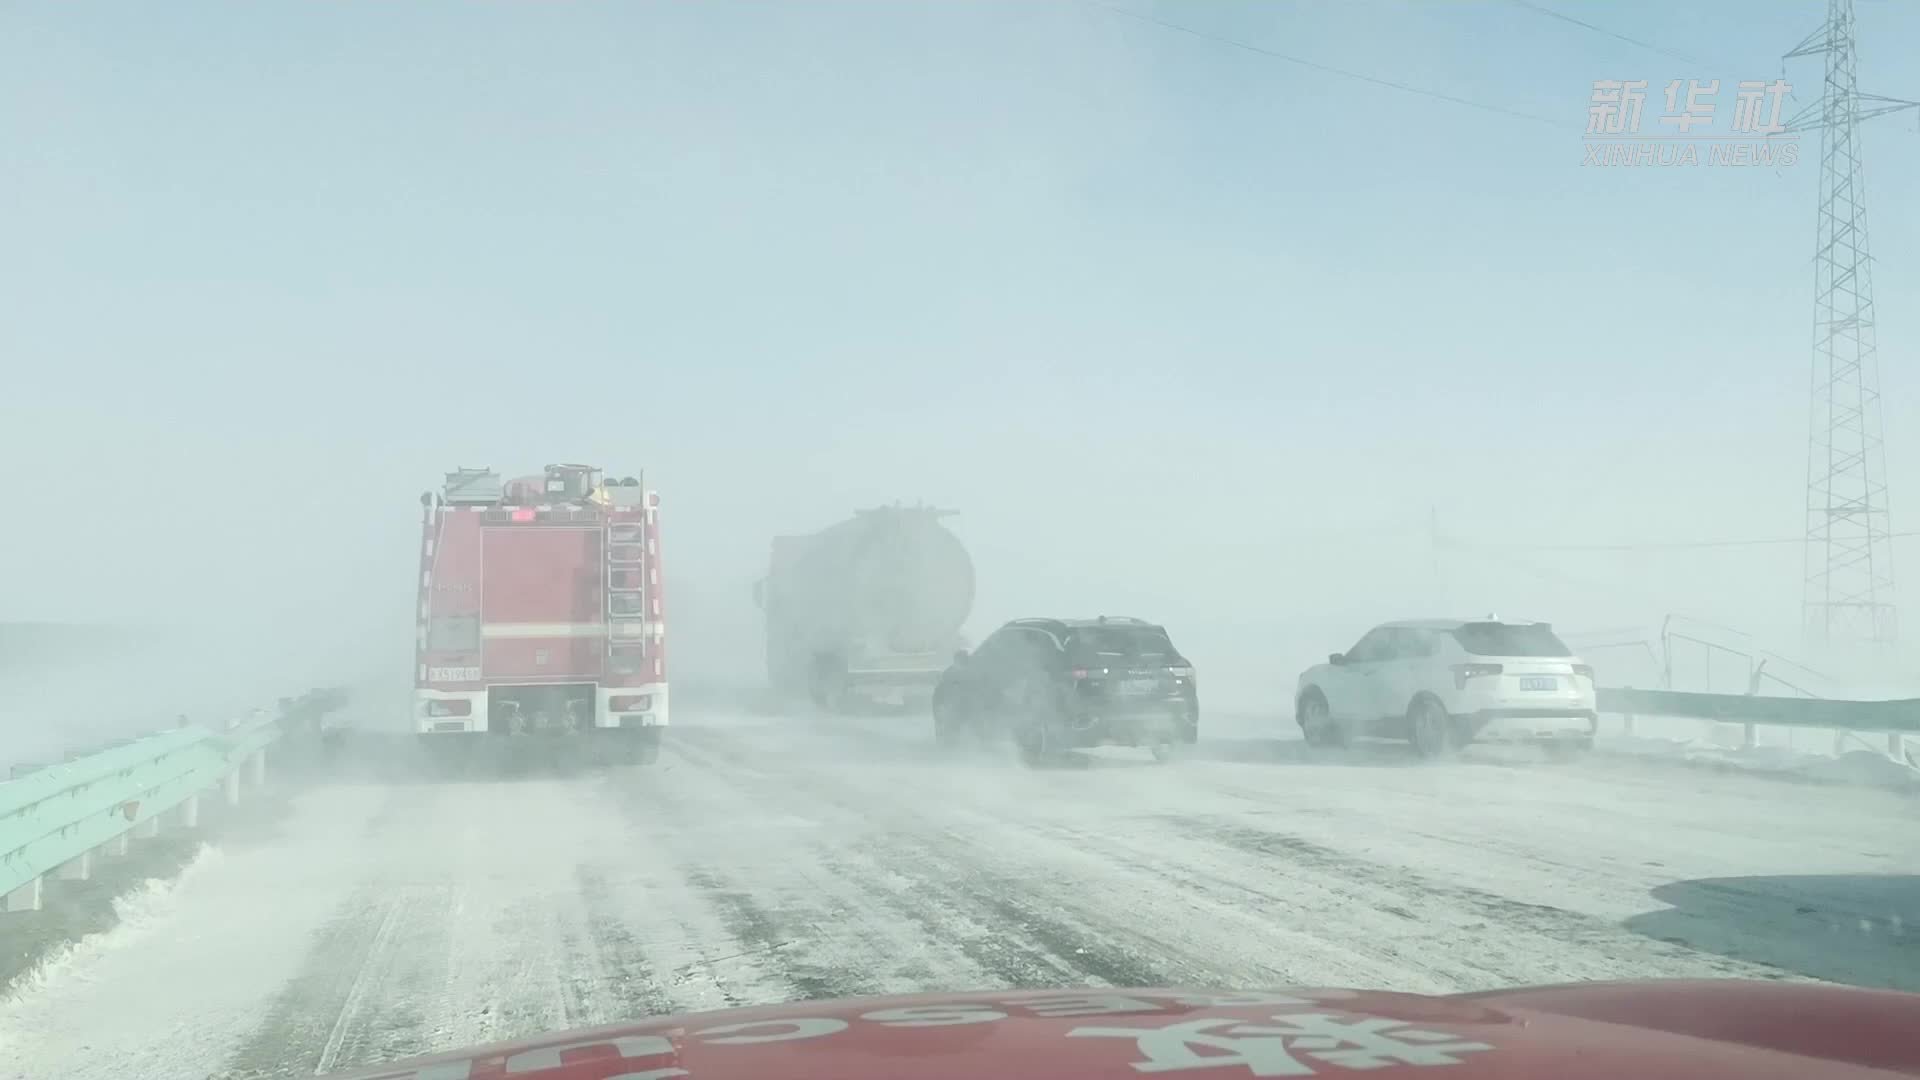 9车27人因“风吹雪”被困 乌鲁木齐消防紧急救援